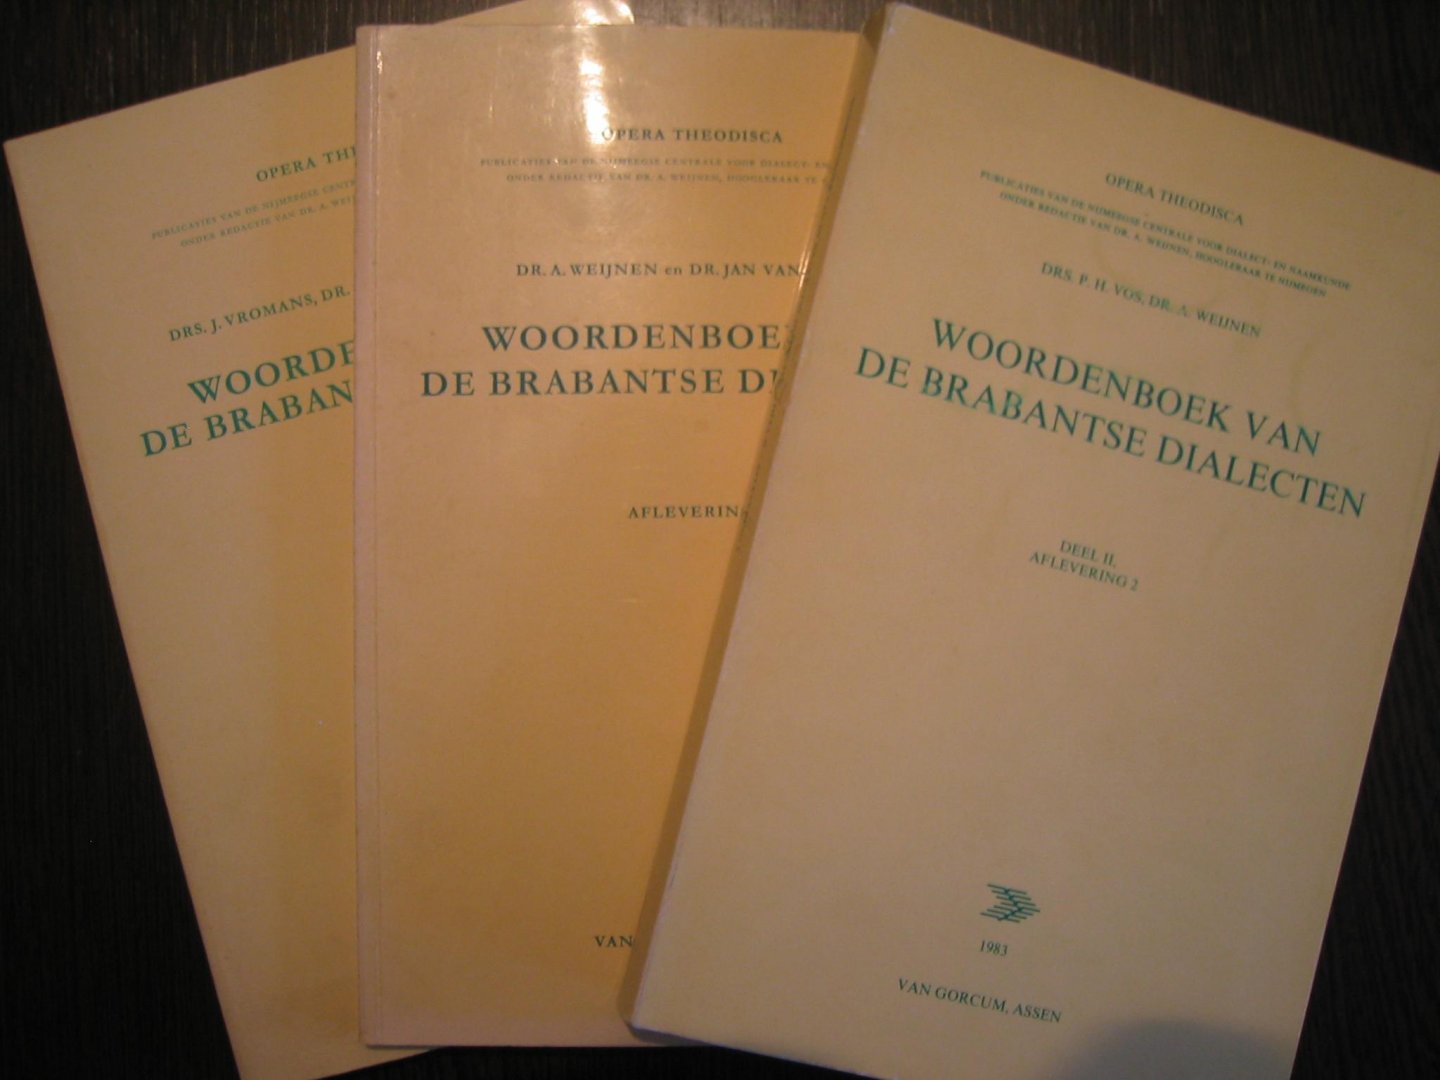 Weijnen, Dr. A. en Dr. Jan van Bakel - Woordenboek van de Brabantse dialecten deel 1 t/m 3 + inleiding